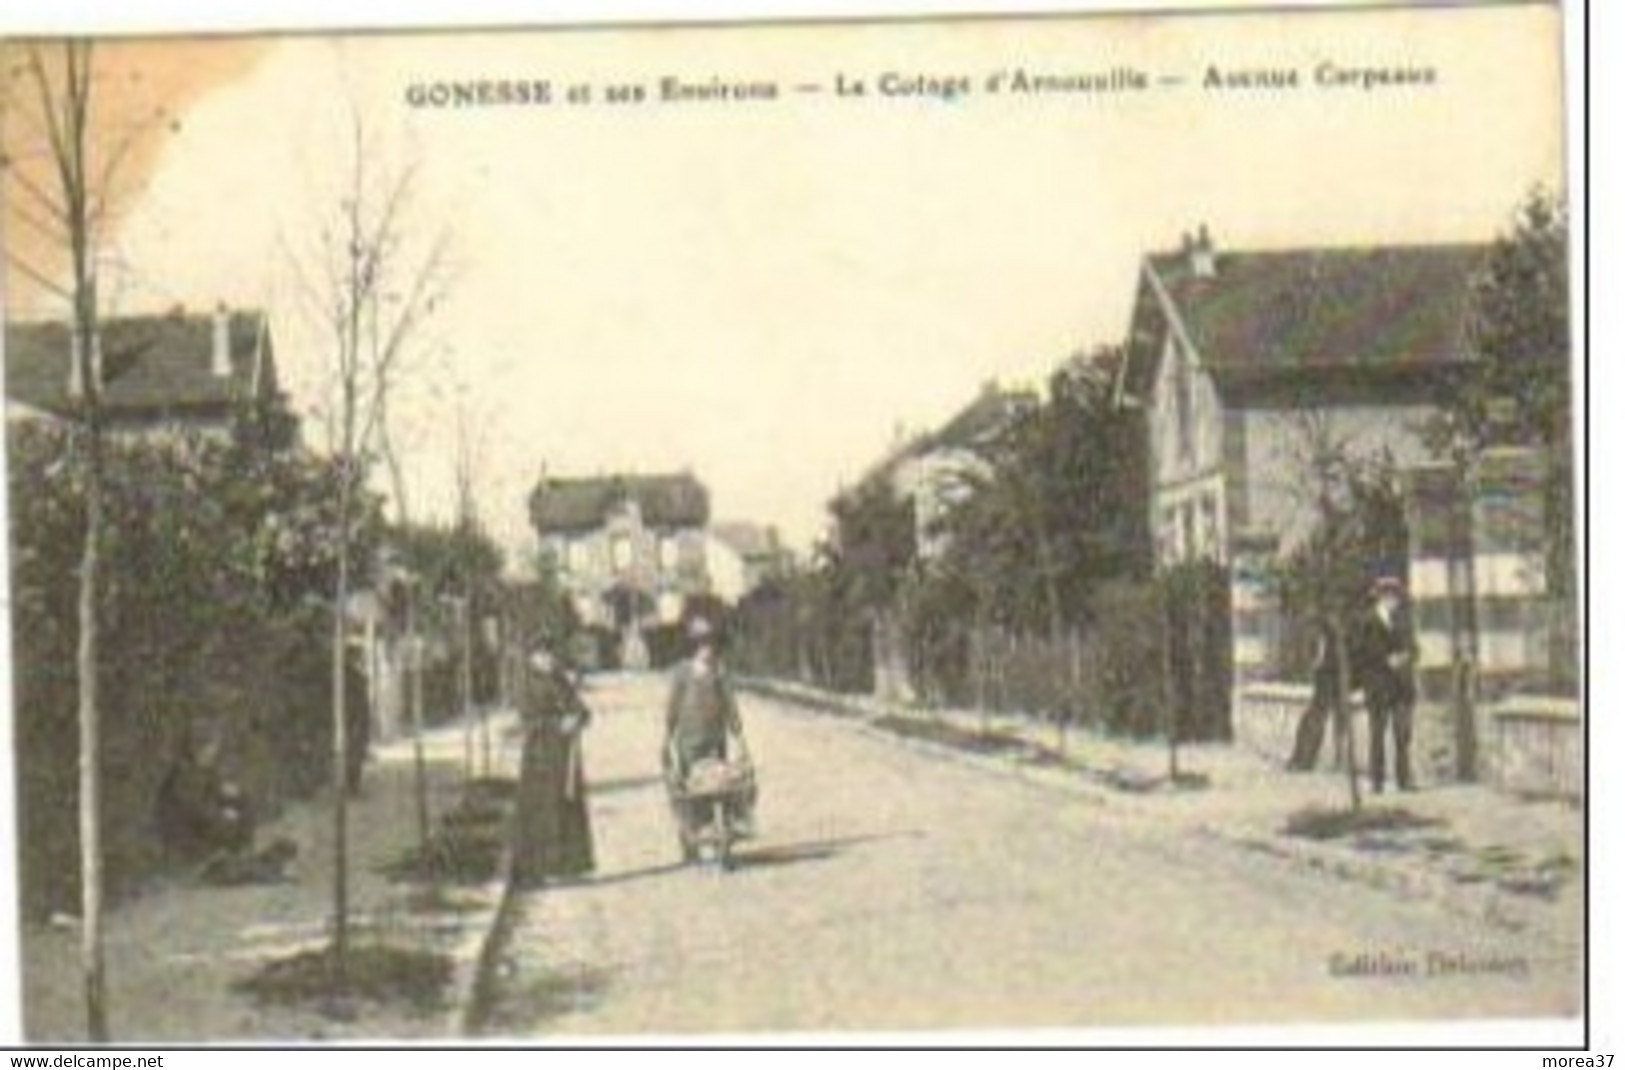 GONESSE Et Ses Environs  Le Cotage D'ARNOUVILLE Avenue CARPEAUX - Gonesse